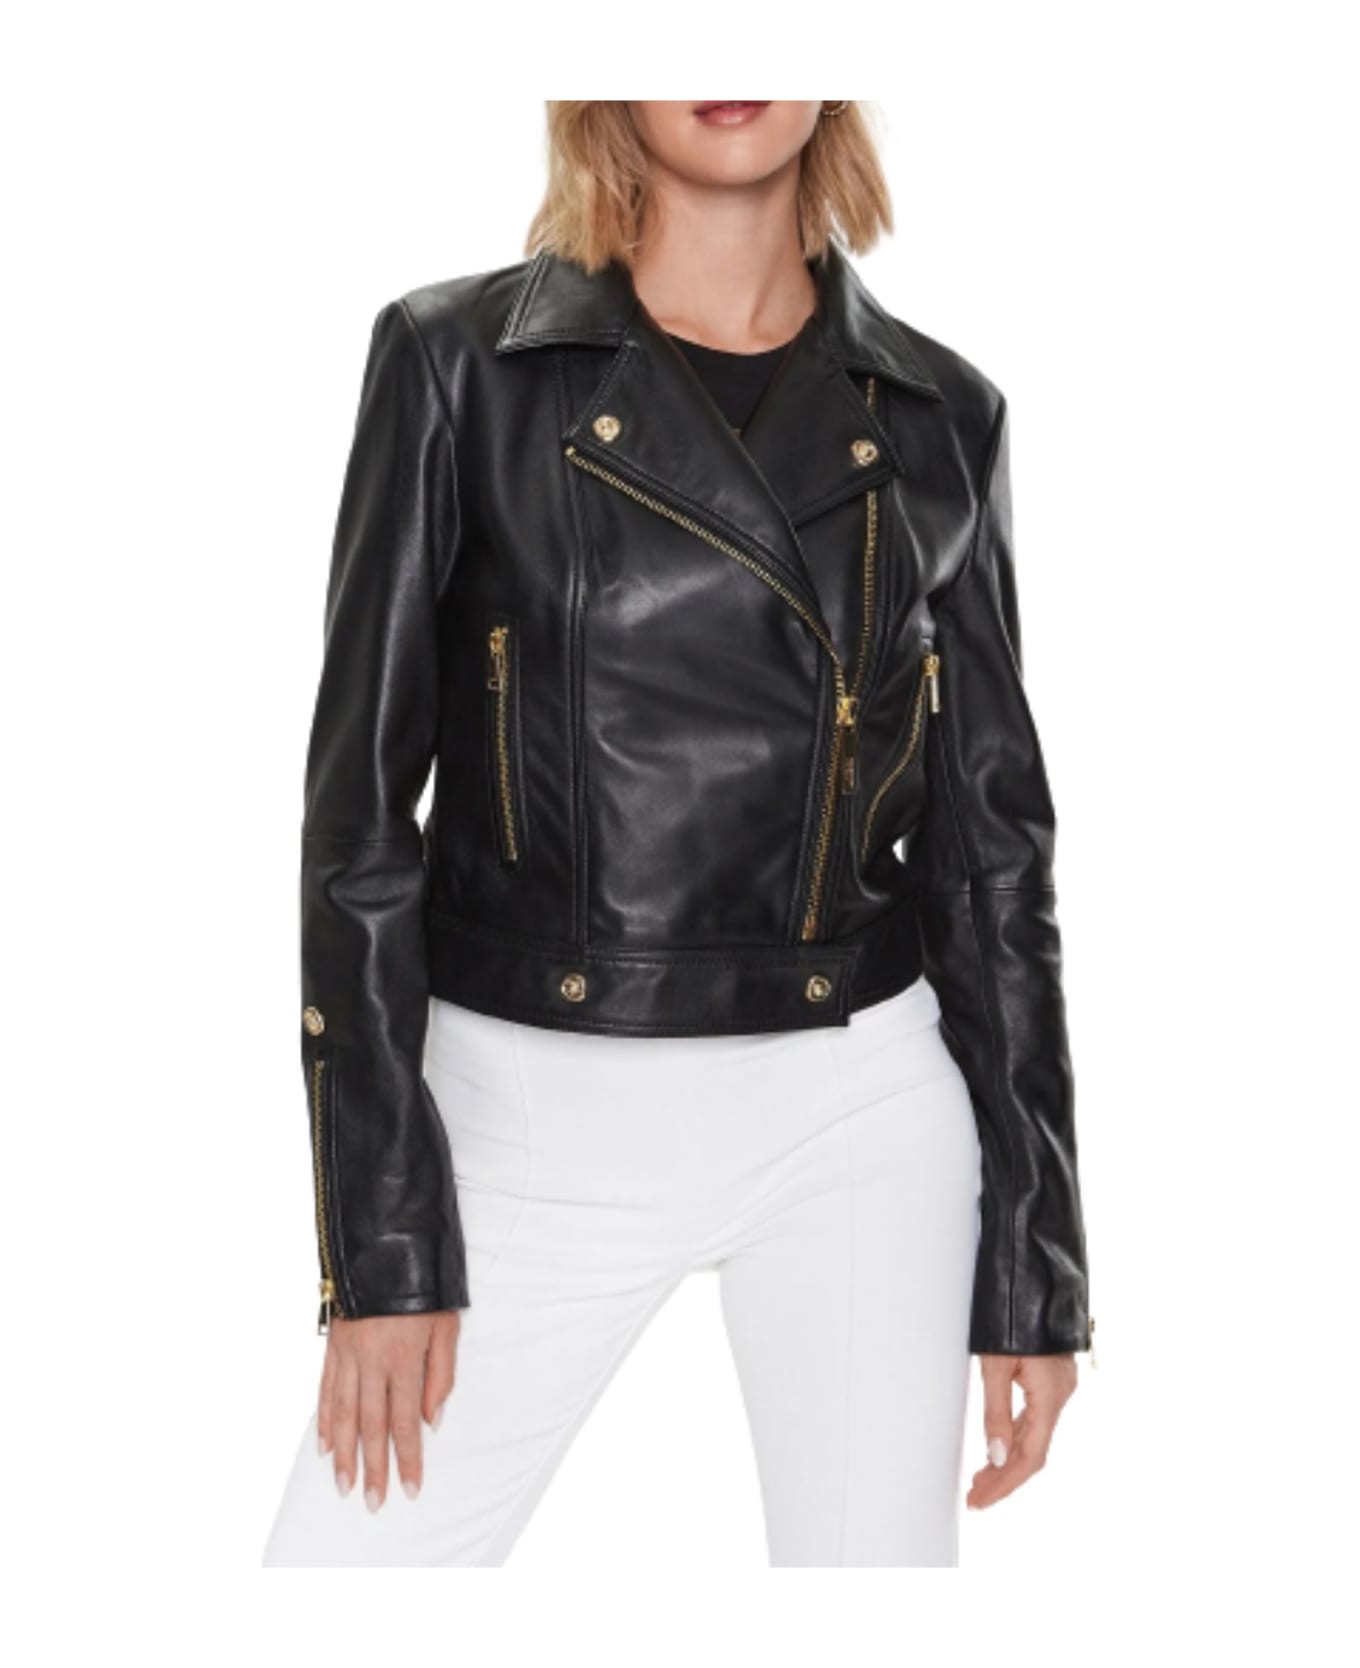 Just Cavalli Leather Jacket 74mwp01 Sheep Napa Leather - BLACK